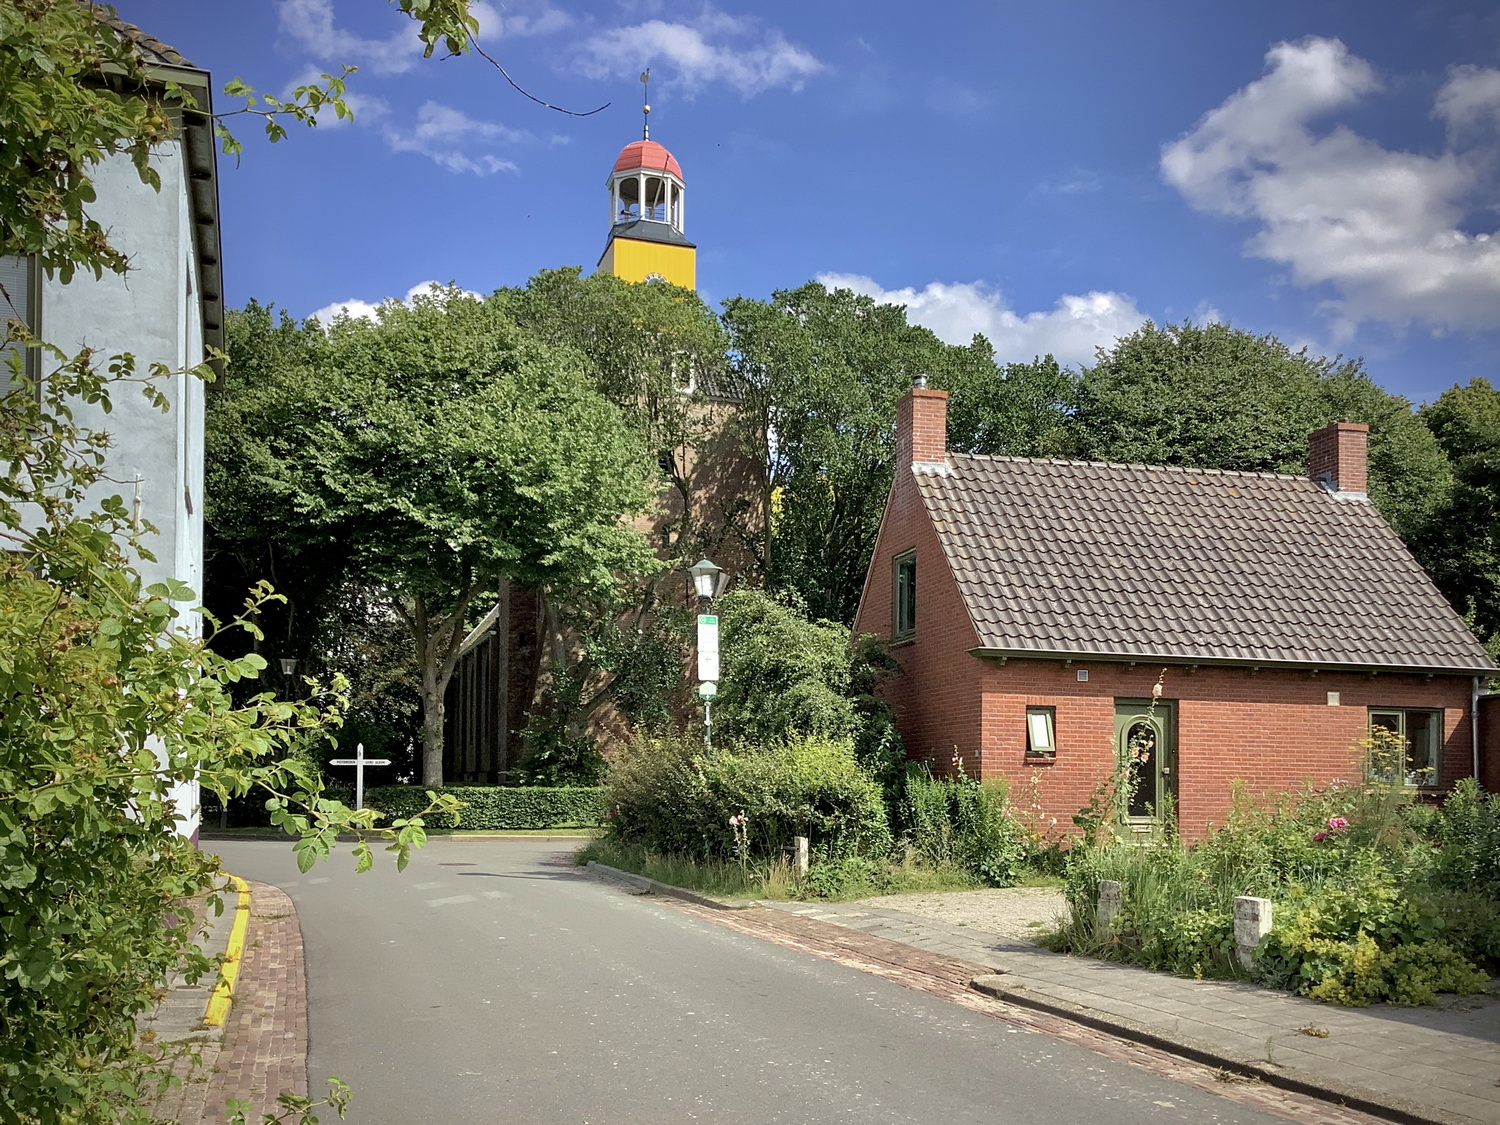 In het dorpsgezicht steekt de gele toren boven ales uit. Foto: ©Jur Kuipers.